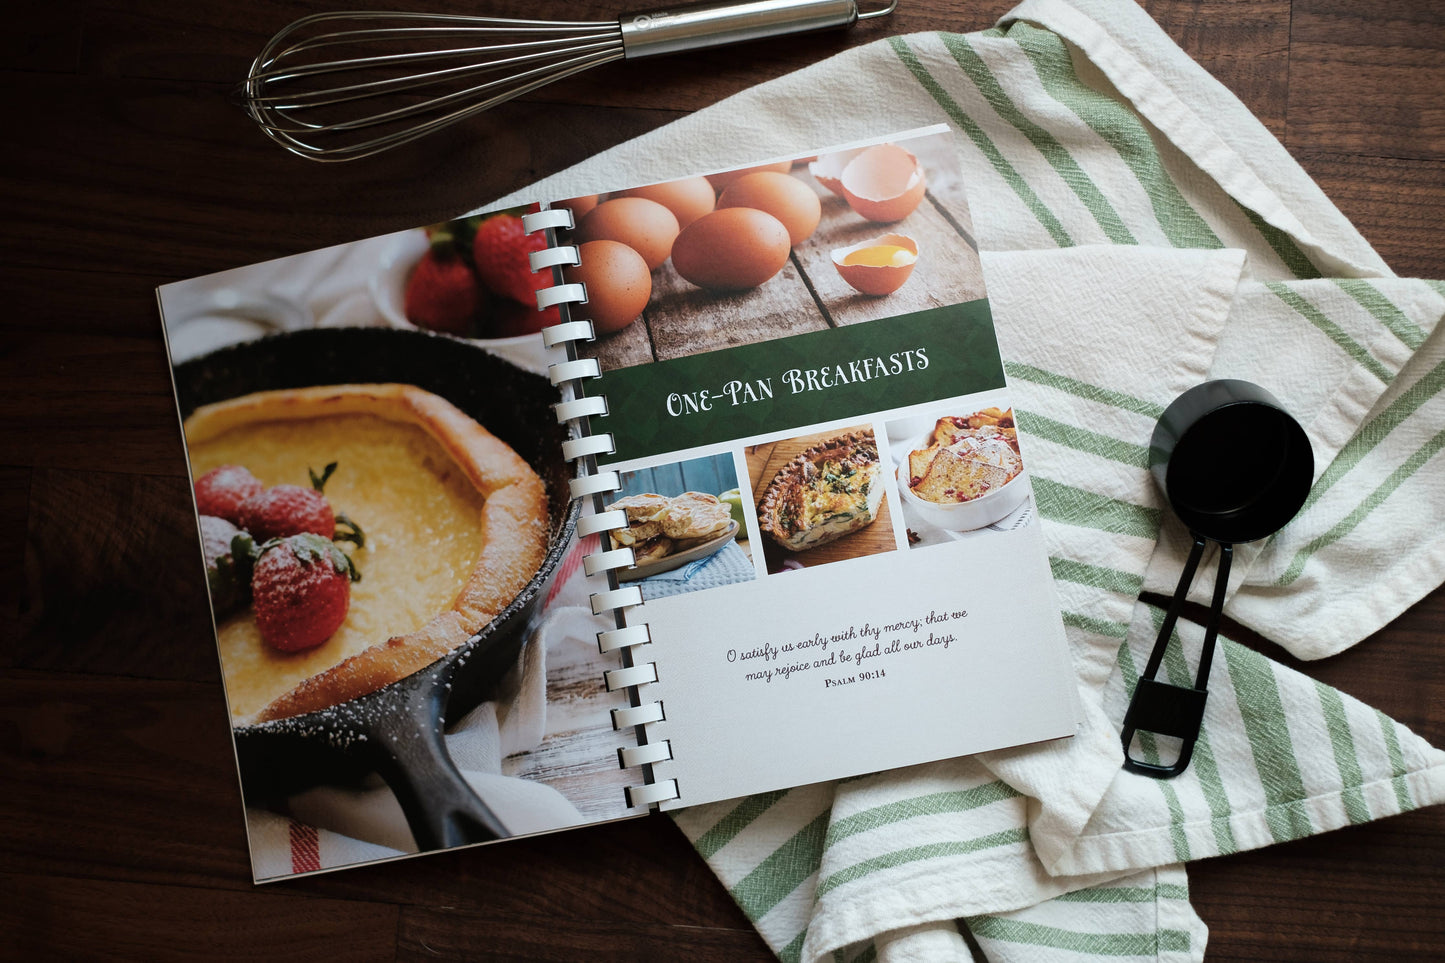 Amish Friends One-Pan Wonders Cookbook